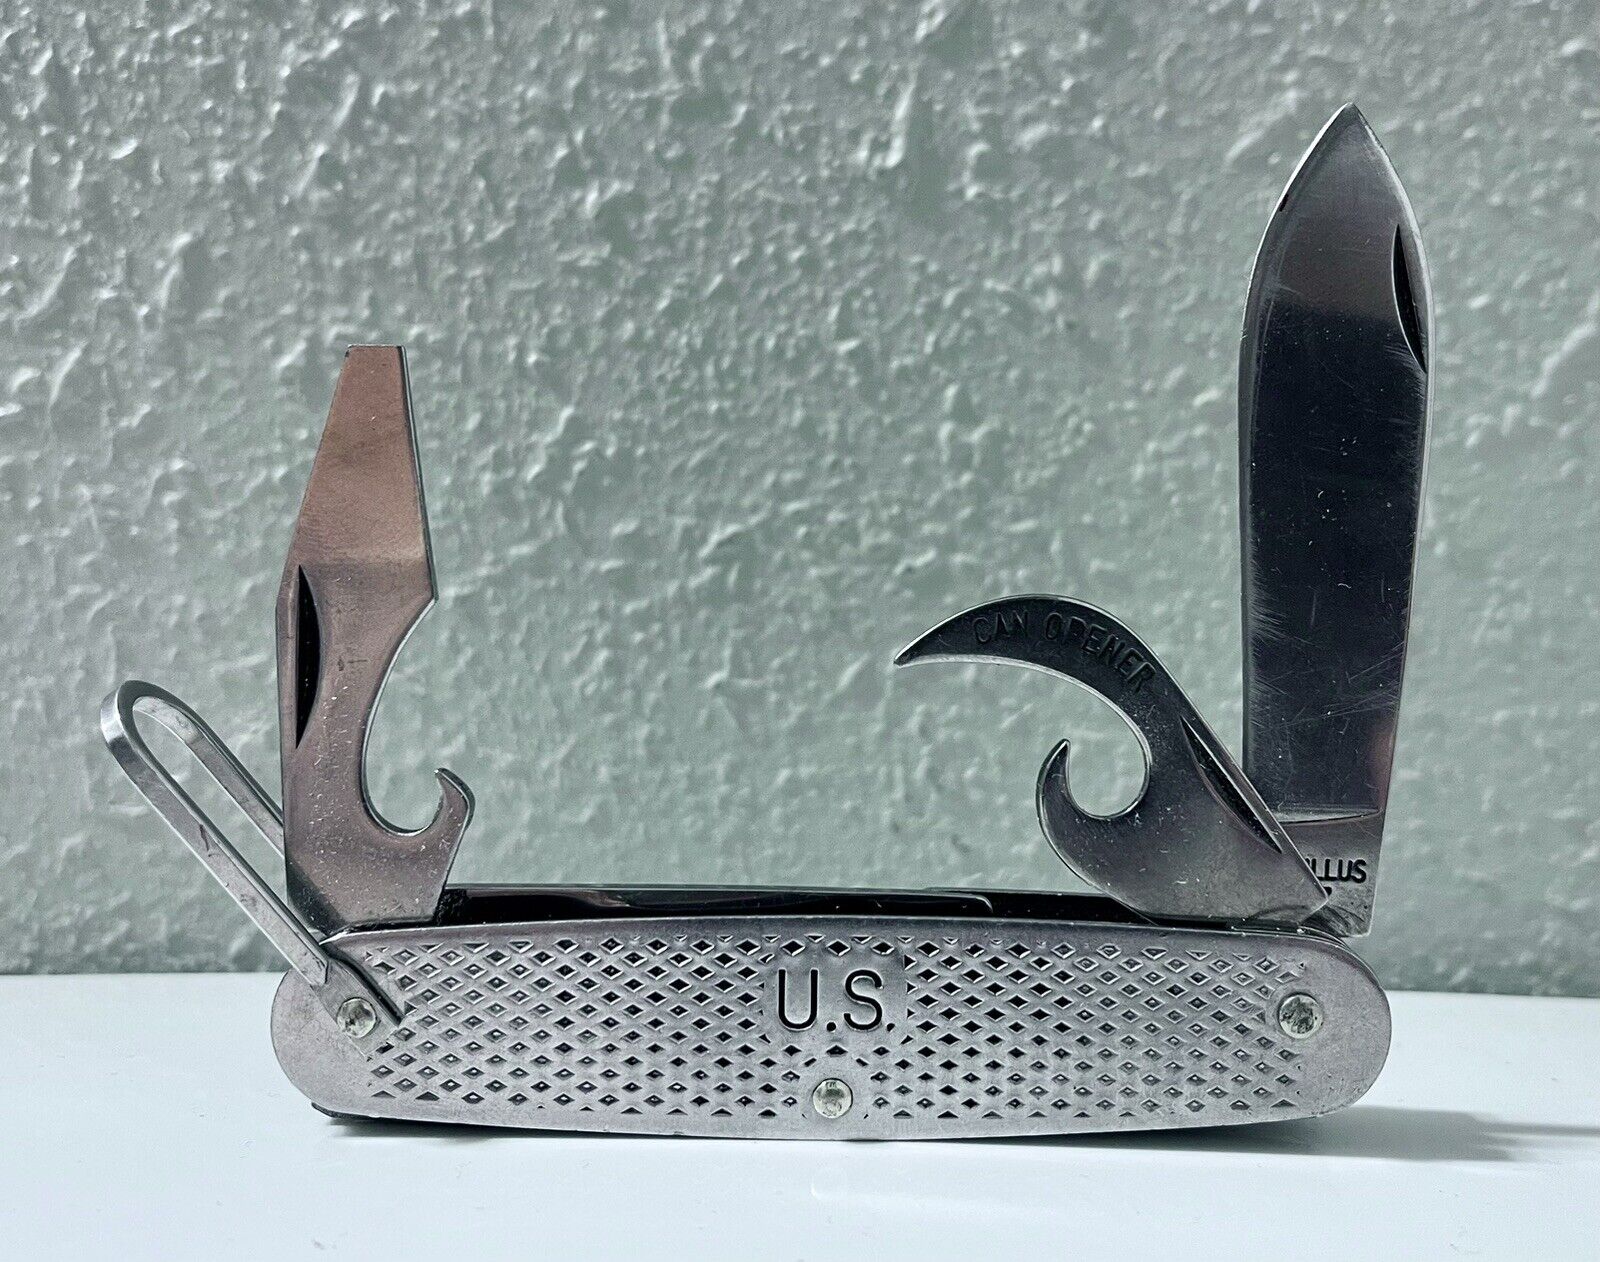 Vintage 1987 Camillus US MilitaryStainless Steel 4 Blade Folding Pocket Knife